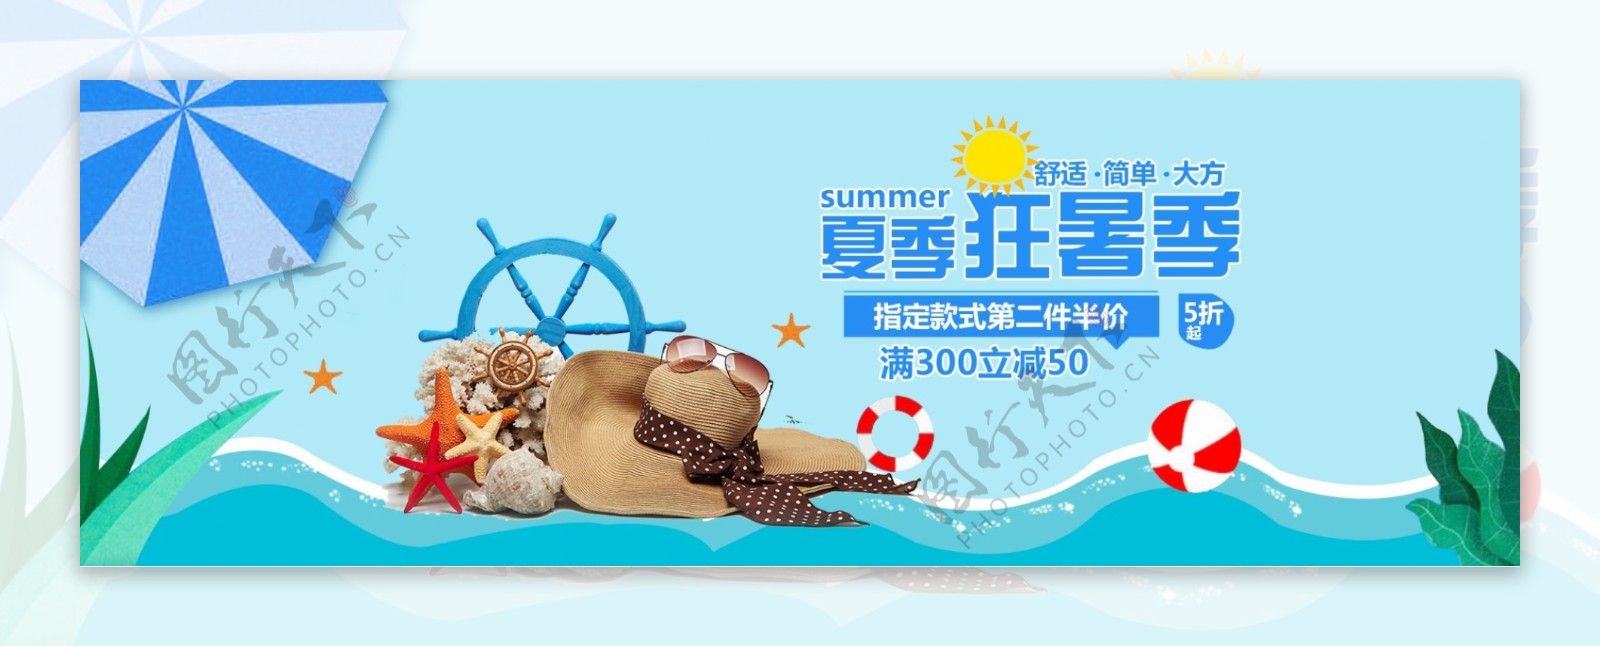 电商淘宝天猫夏季夏日促销海报